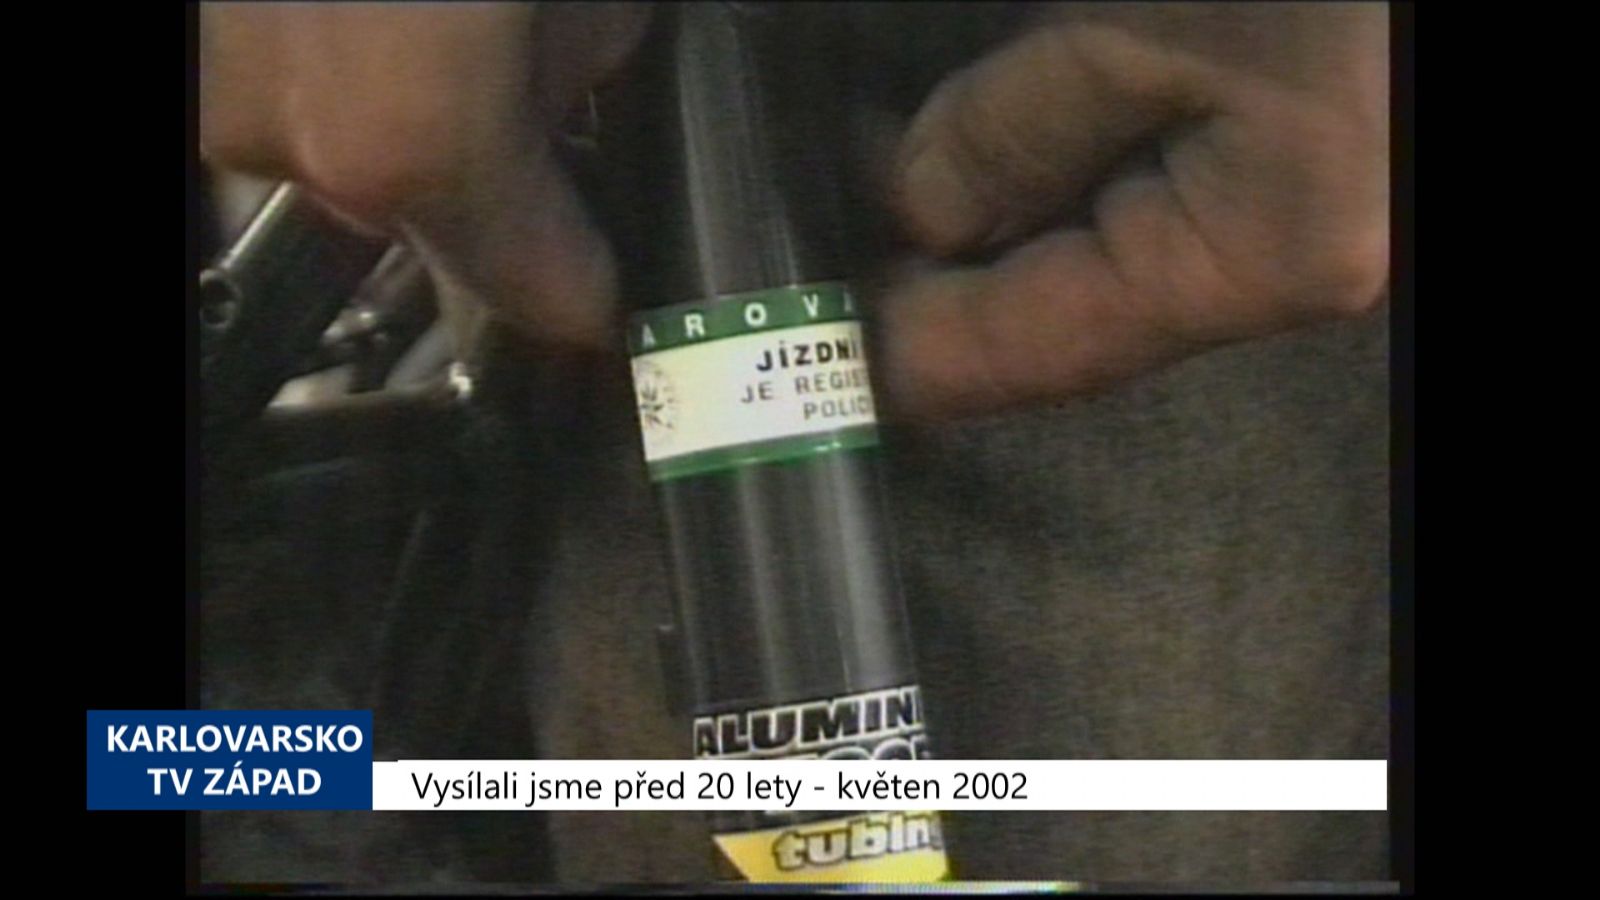 2002 – Cheb: Zájemci si mohou zaevidovat své kolo na Policii (TV Západ)